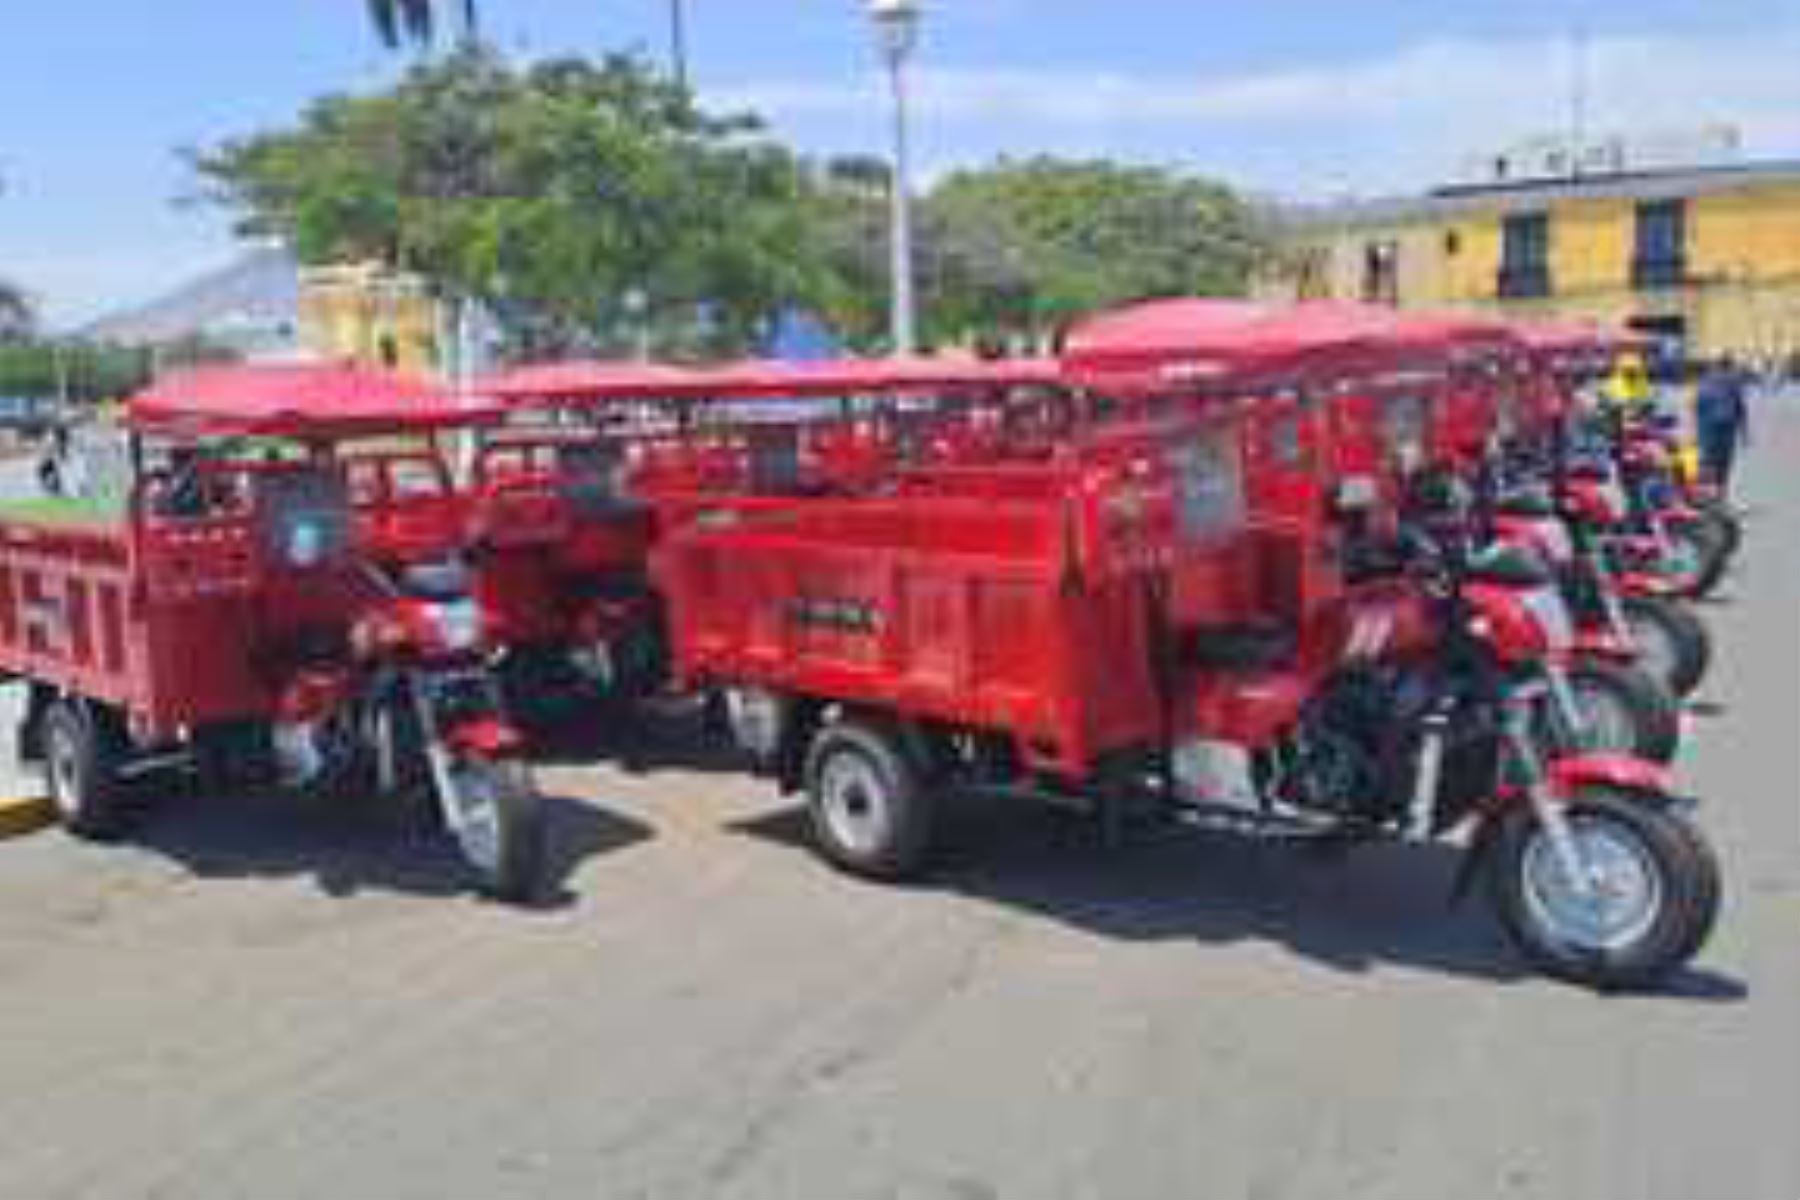 El Minam entregó 6 compactadoras, 20 trimóviles, 1 camión cisterna, 4 motocicletas y 3 volquetes. Foto: ANDINA/Minam